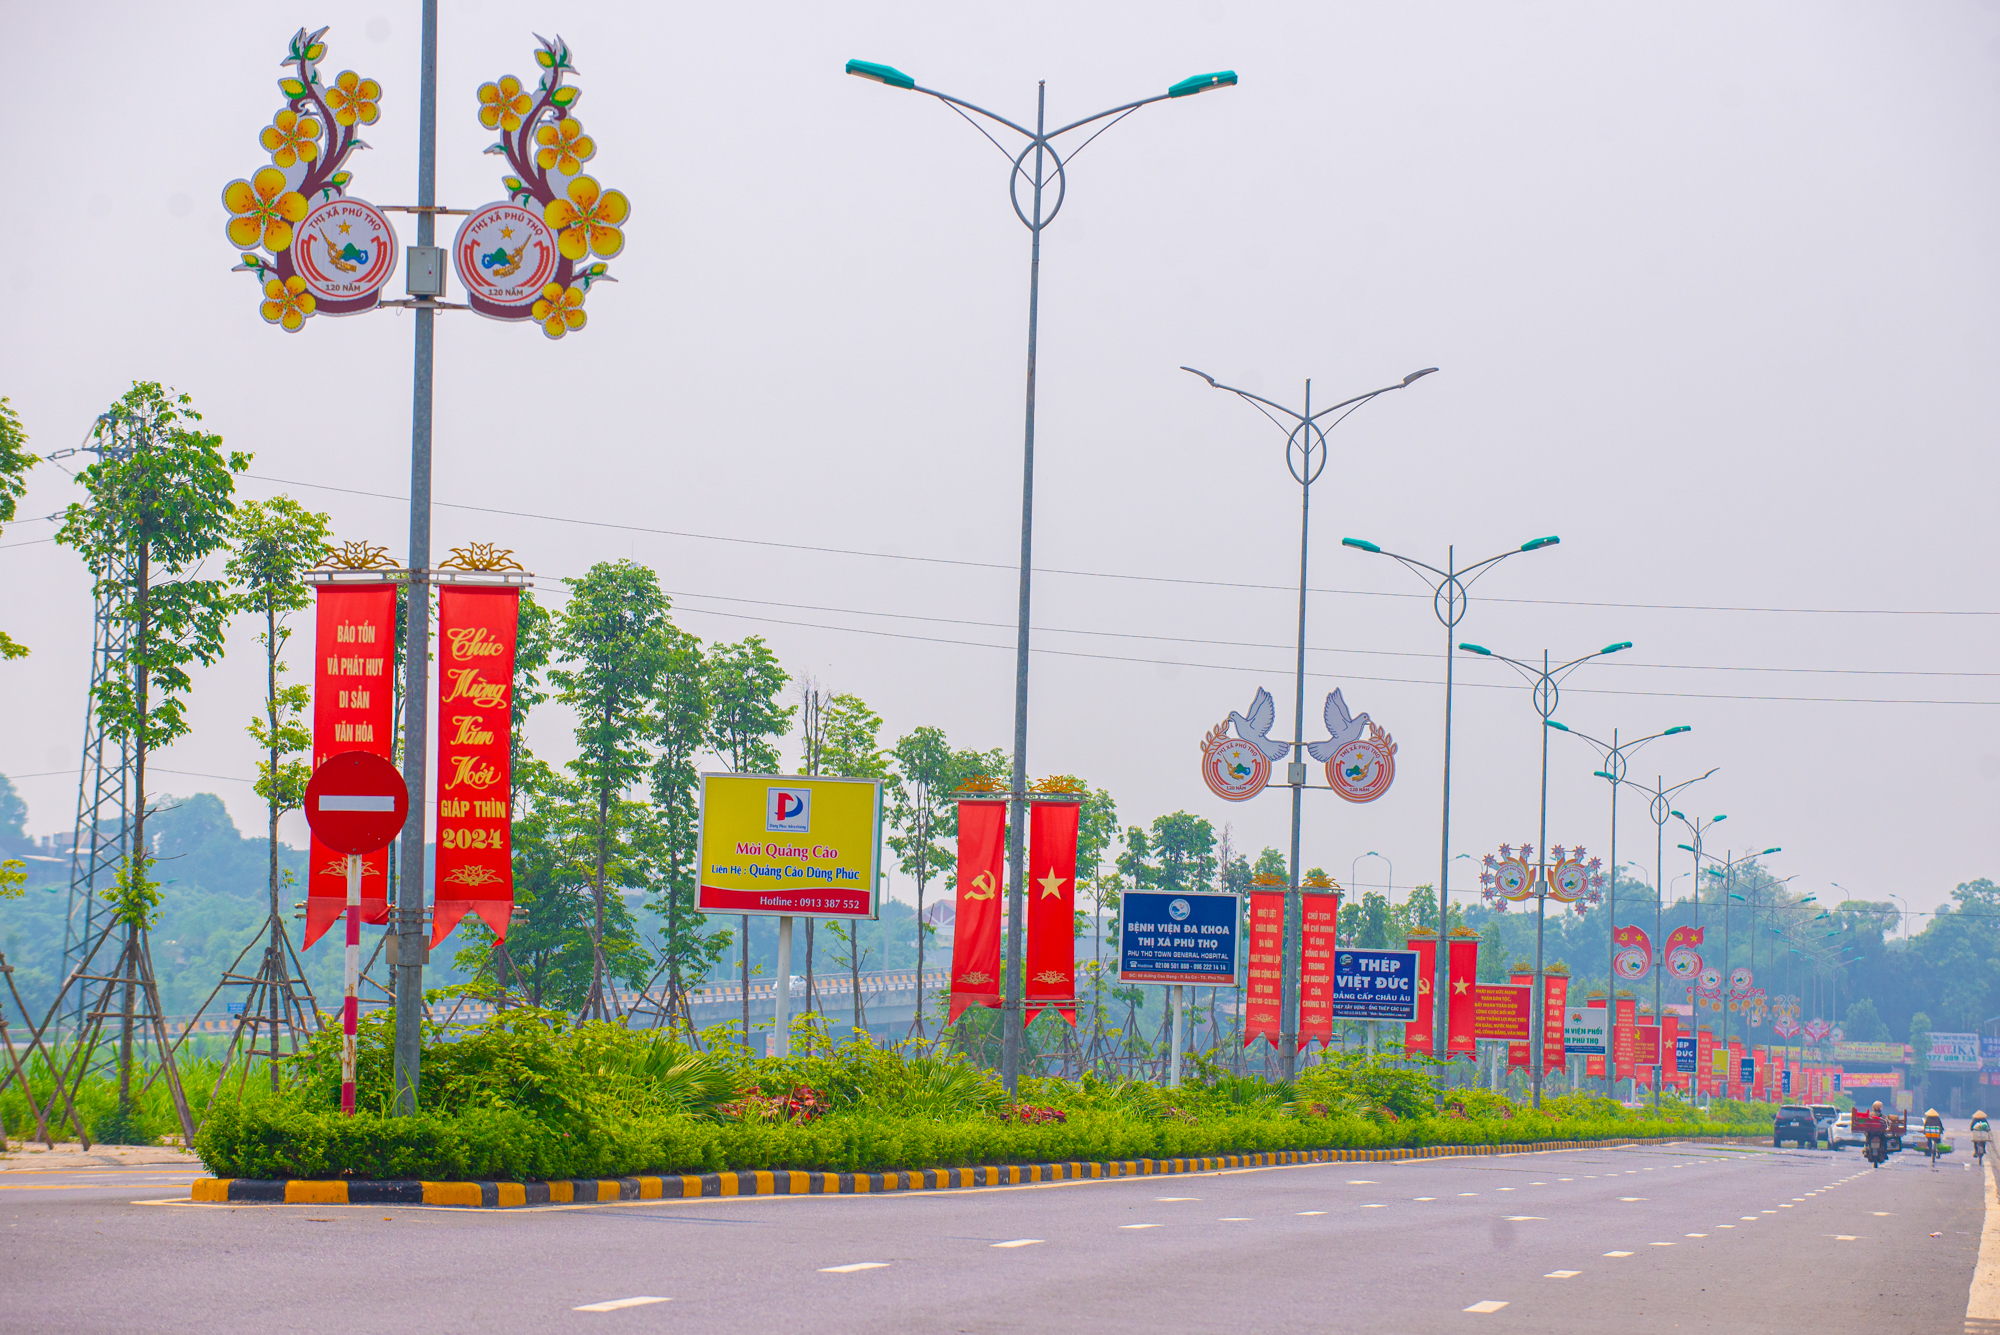 Thị xã lâu đời nhất Việt Nam là giao điểm của 4 đường cao tốc, có khu công nghiệp rộng gần bằng quận Hoàn Kiếm, sẽ lên thành phố sau vài năm nữa- Ảnh 4.